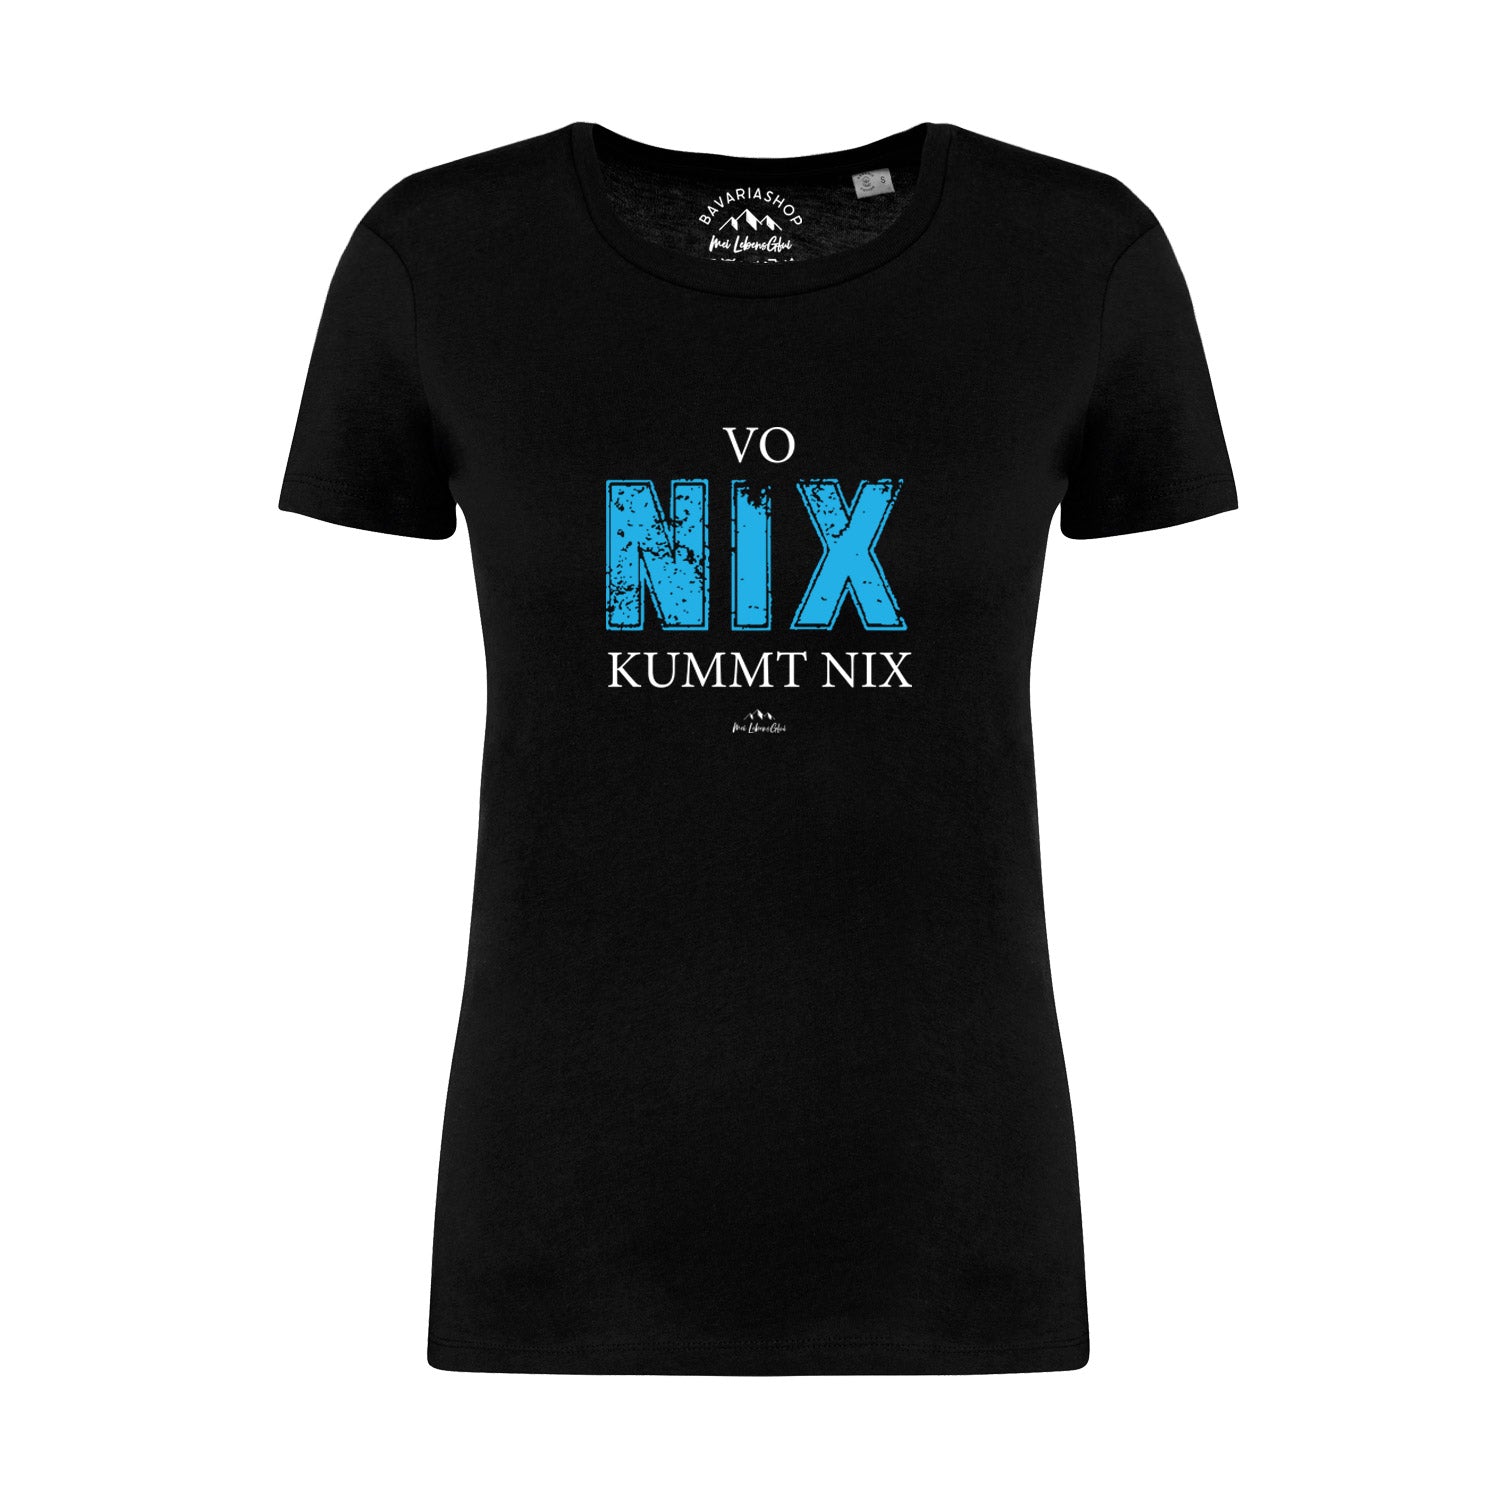 Damen T-Shirt "Vo nix kummt nix"